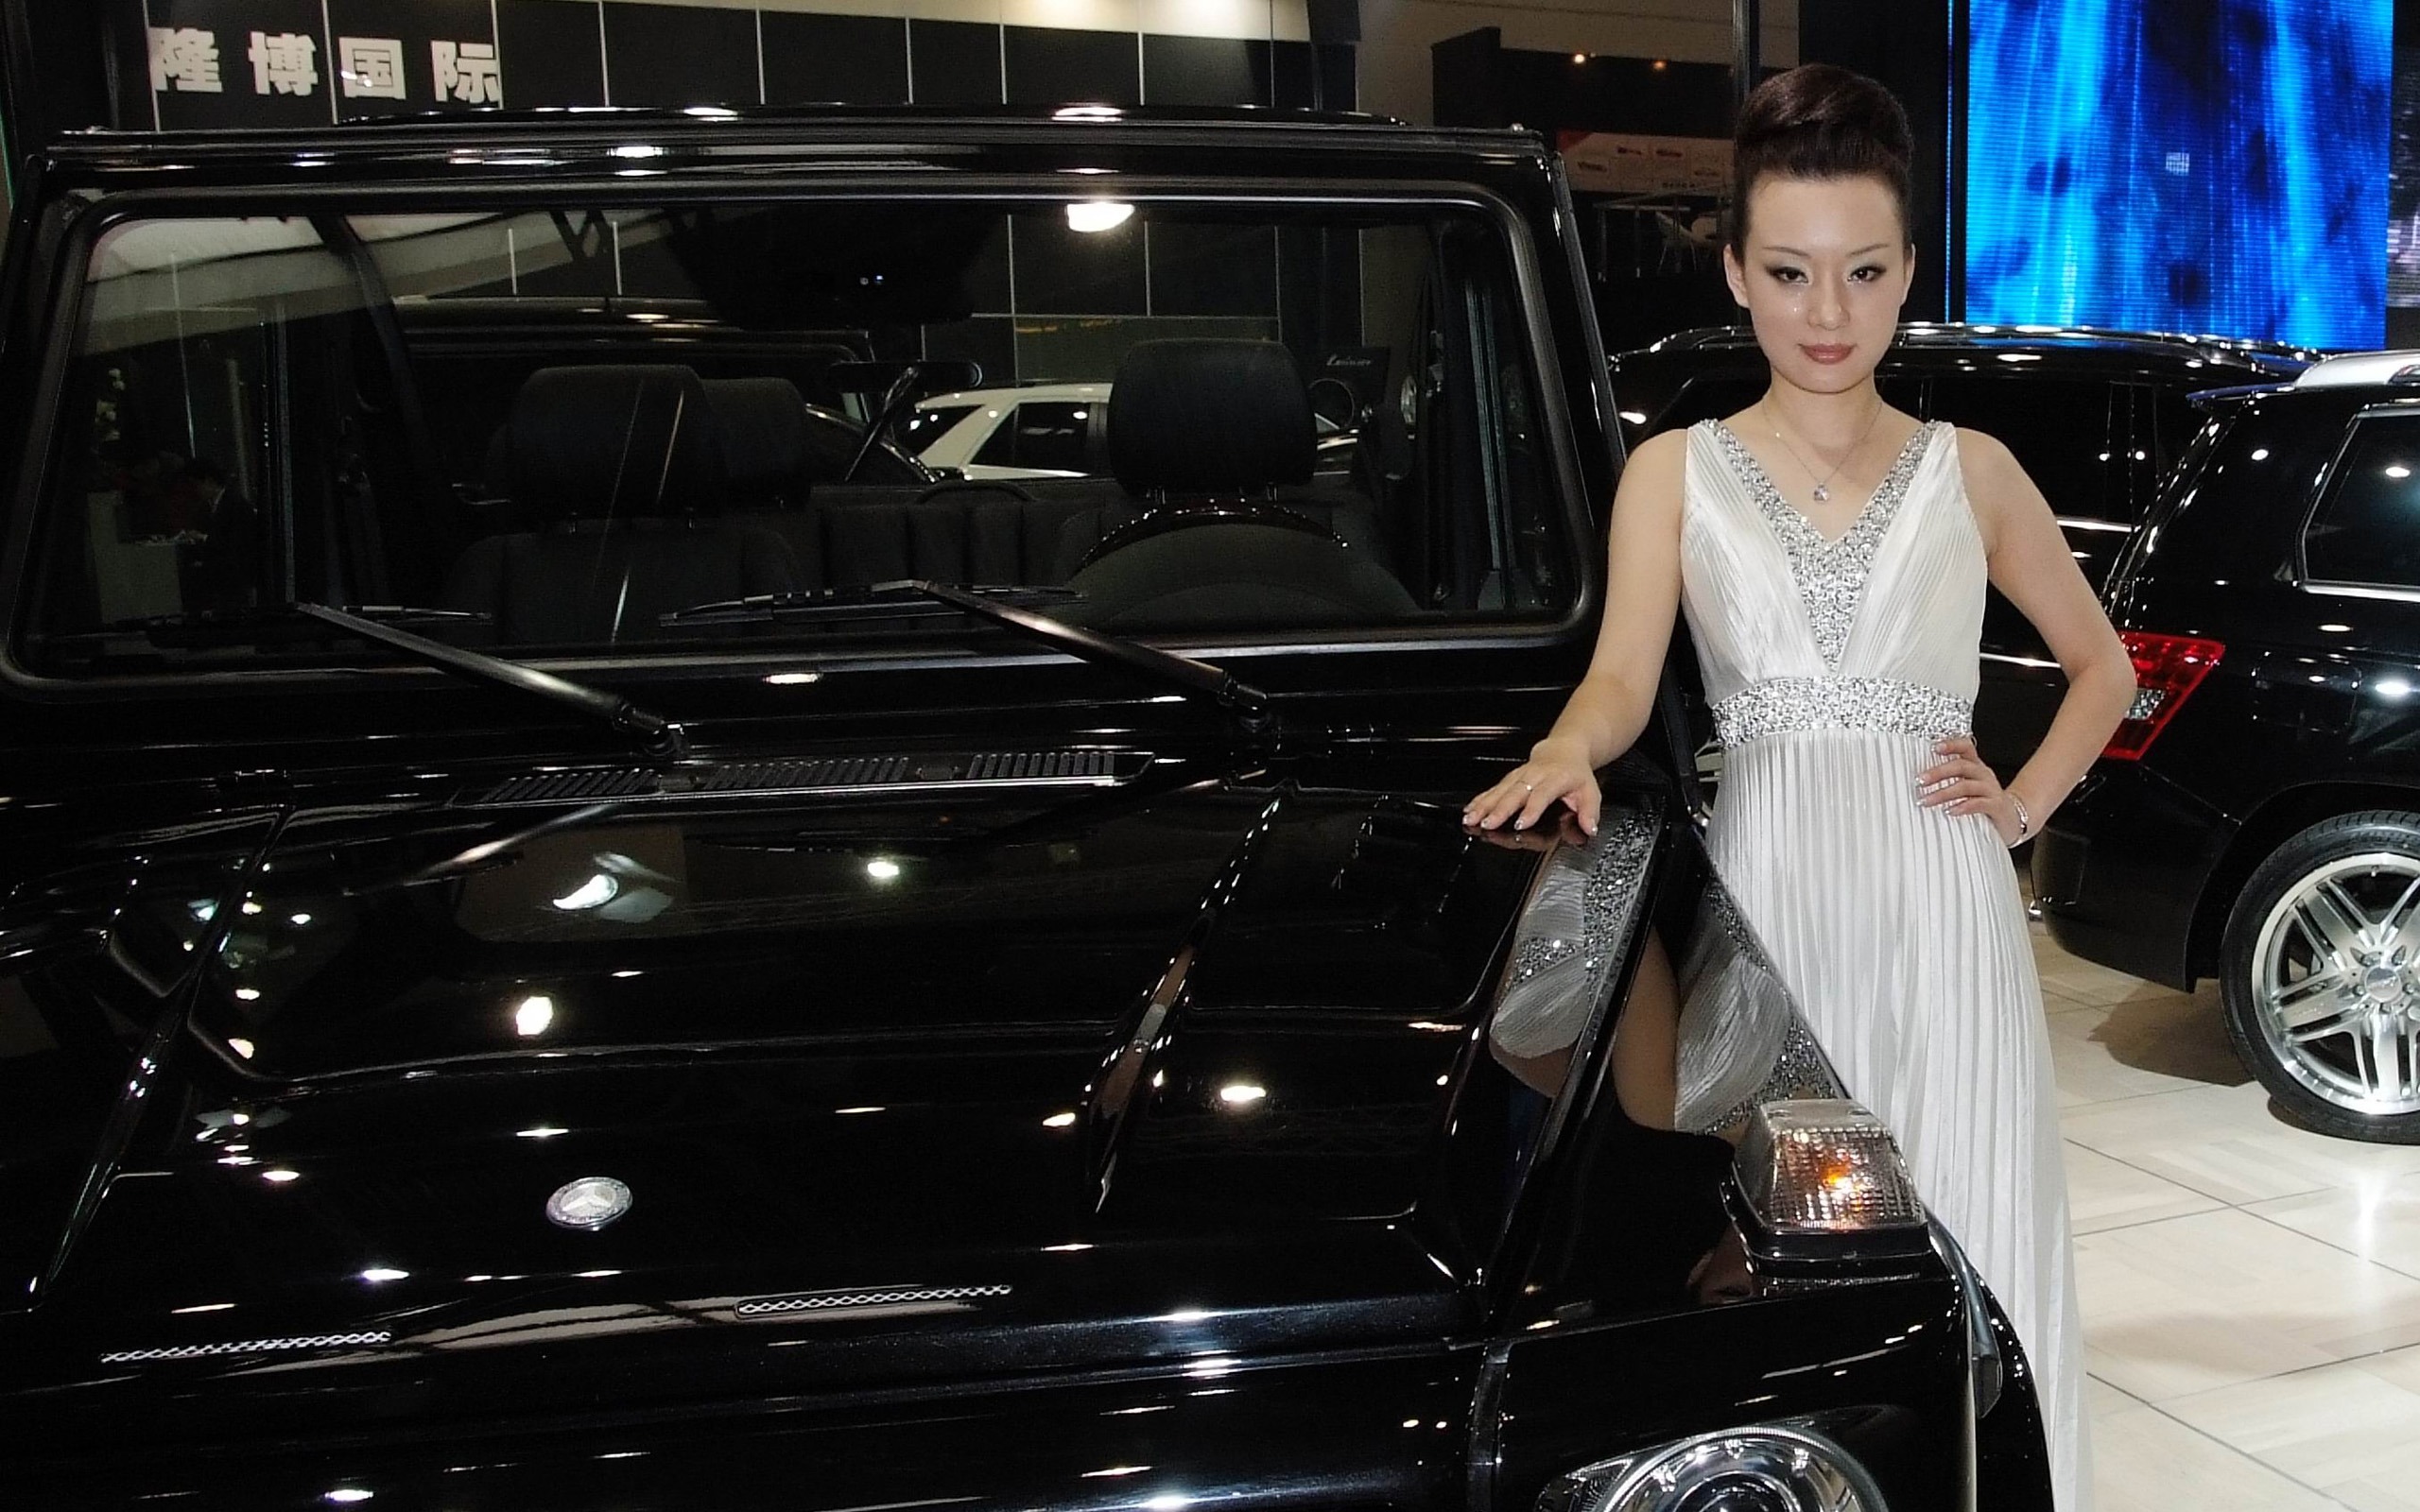 2010 v Pekingu Mezinárodním autosalonu Heung Che krása (prutu práce) #7 - 2560x1600